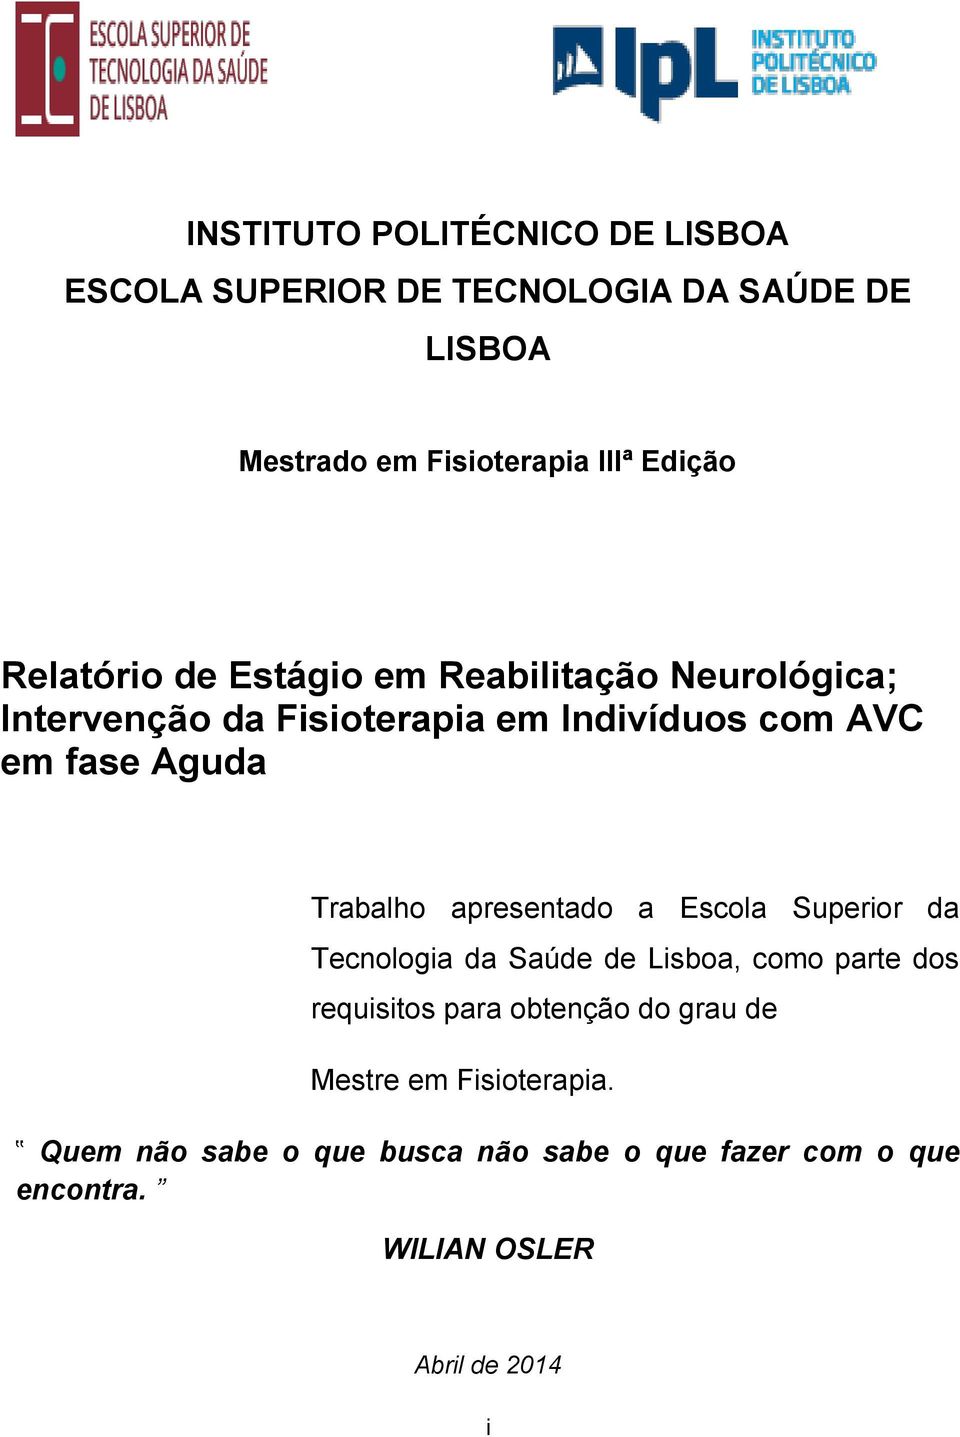 Trabalho apresentado a Escola Superior da Tecnologia da Saúde de Lisboa, como parte dos requisitos para obtenção do